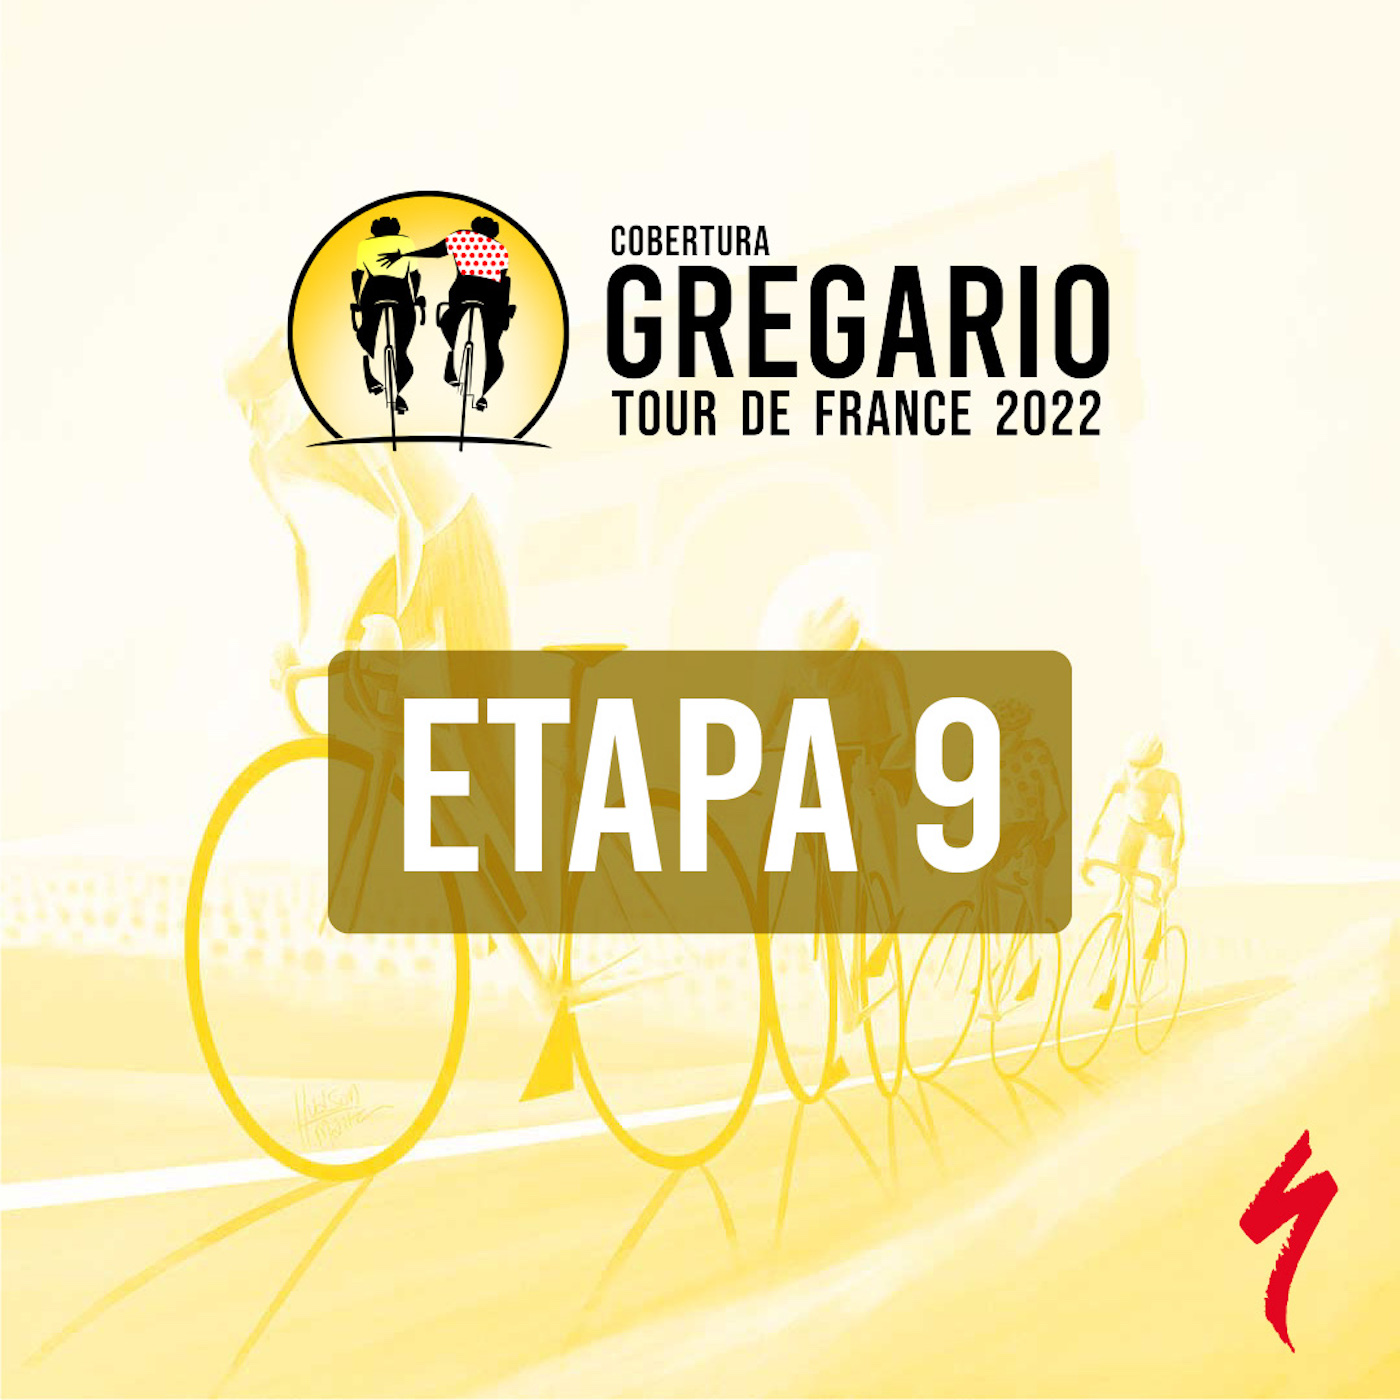 Etapa 9 - Cobertura Tour de France Gregario Specialized - Gregario